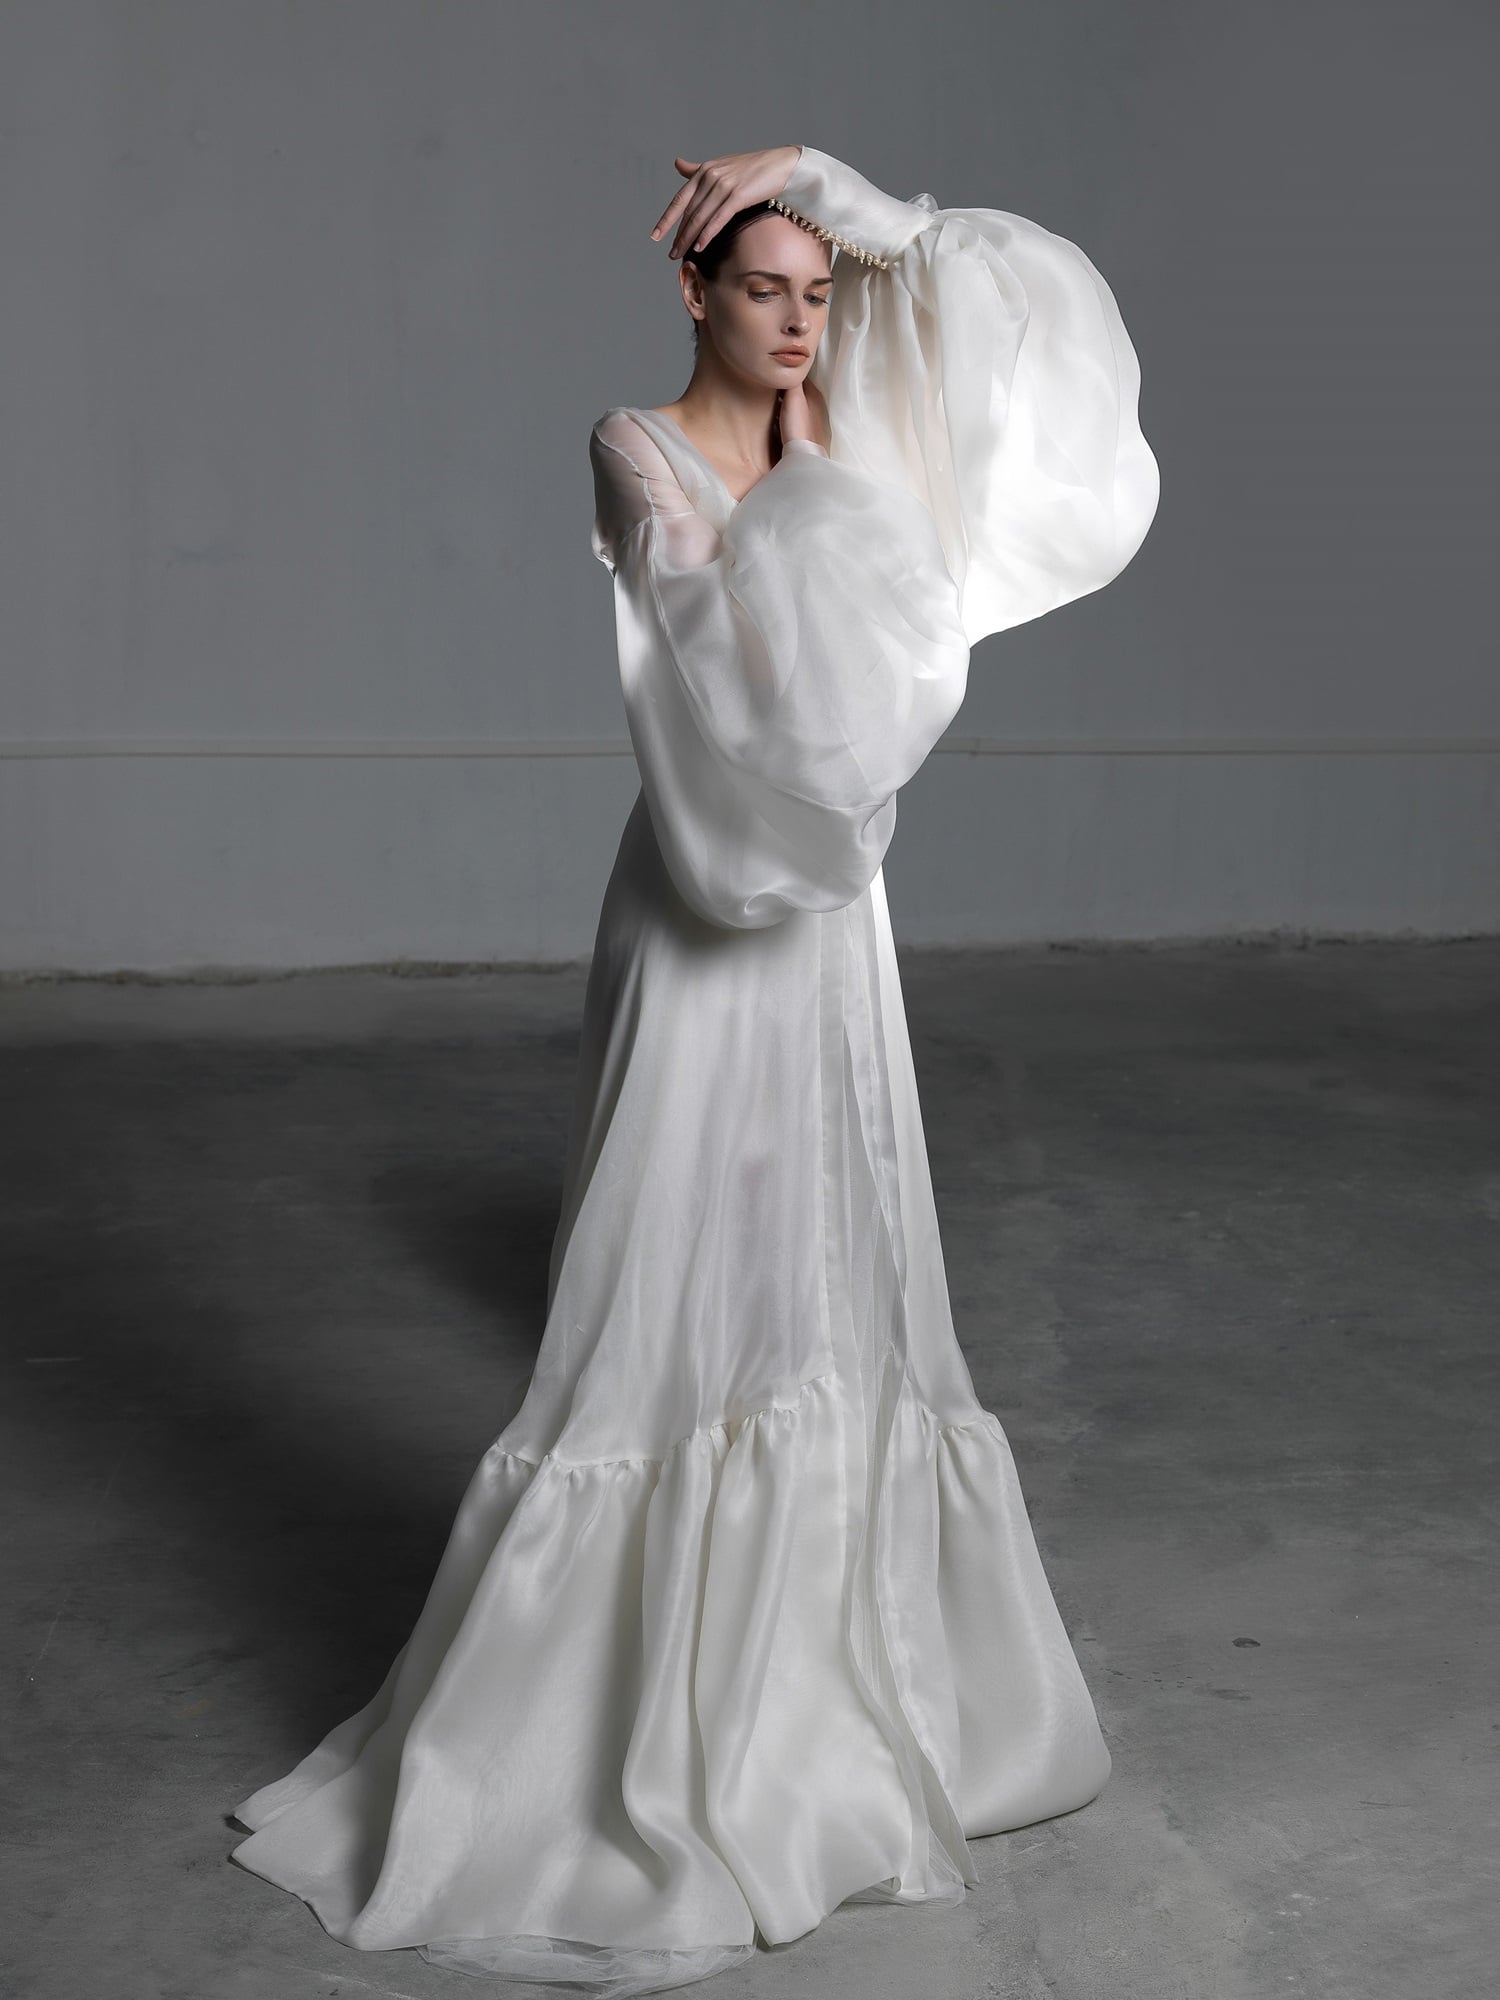 Silk wedding dress with balloon sleeves Vasia Tzotzopoulou 2017